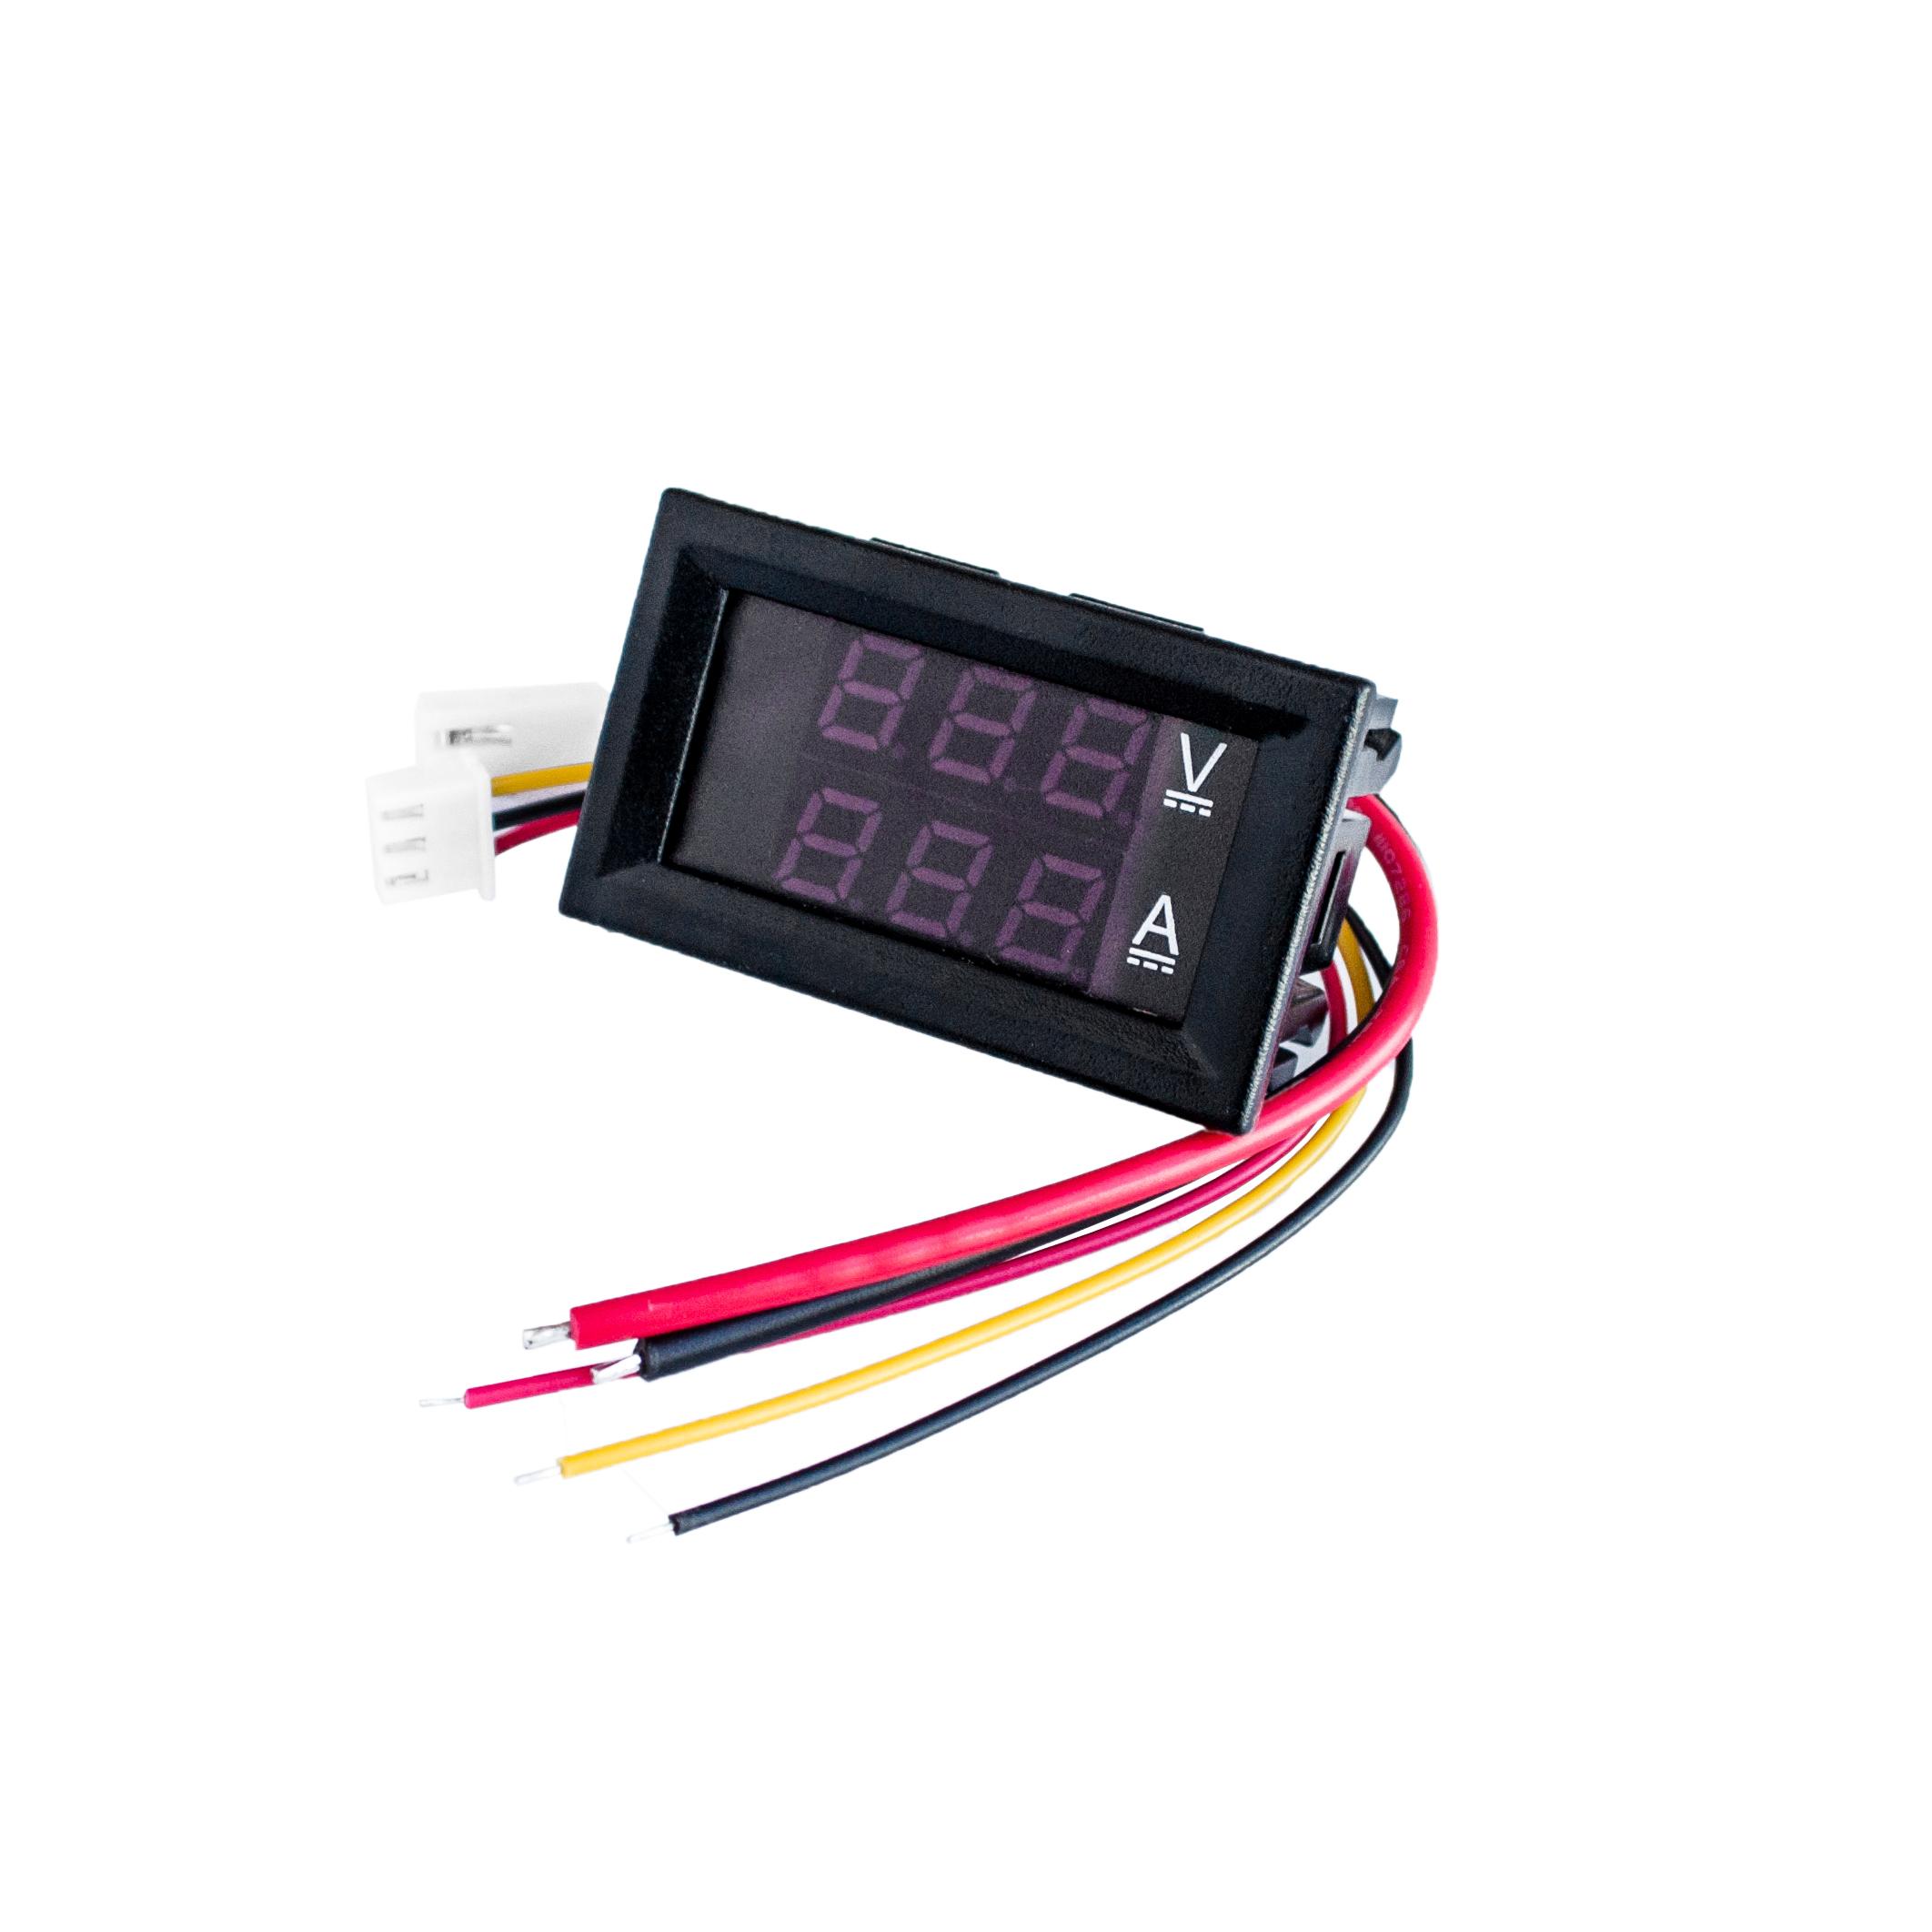 Mini-0-28inch-LED-Digital-Voltmeter-Ammeter-DC-100V-50A-100A-Volt-Ampere-Meter-Amperemeter-Voltage-Indicator-Tester-with-shunt